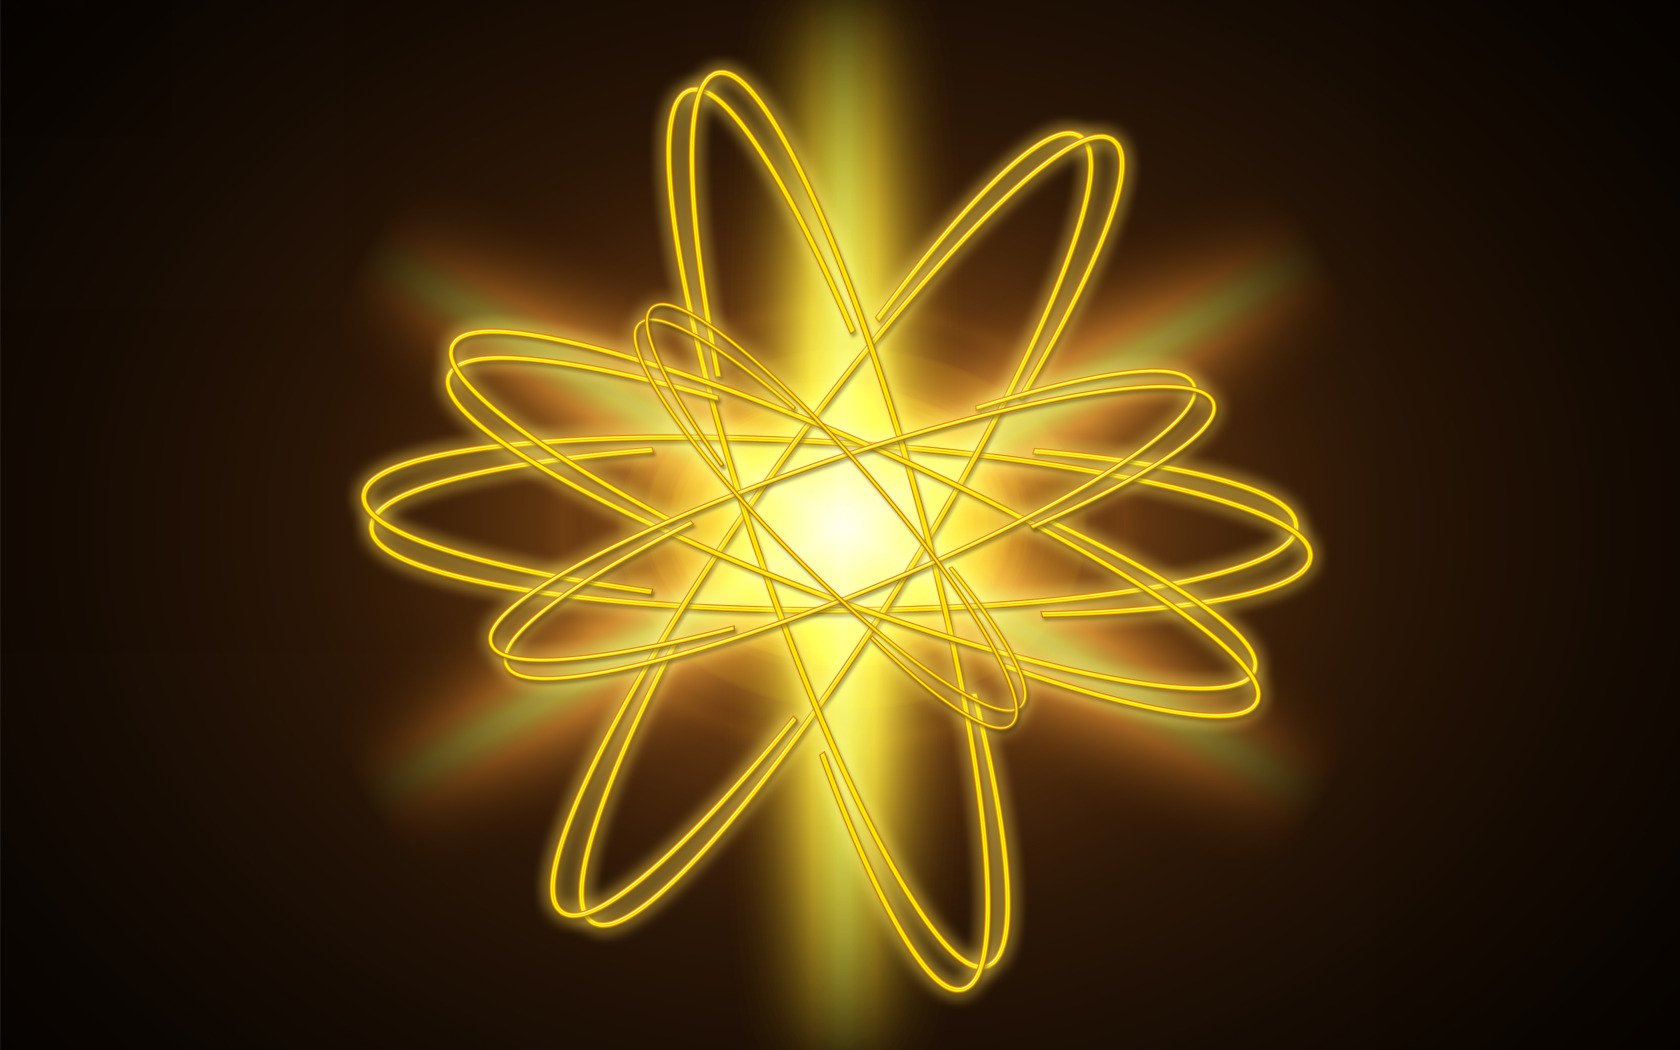 [ATOM]определения скорости и частоты электрона в Атоме Хим Элемента зная только радиус атома